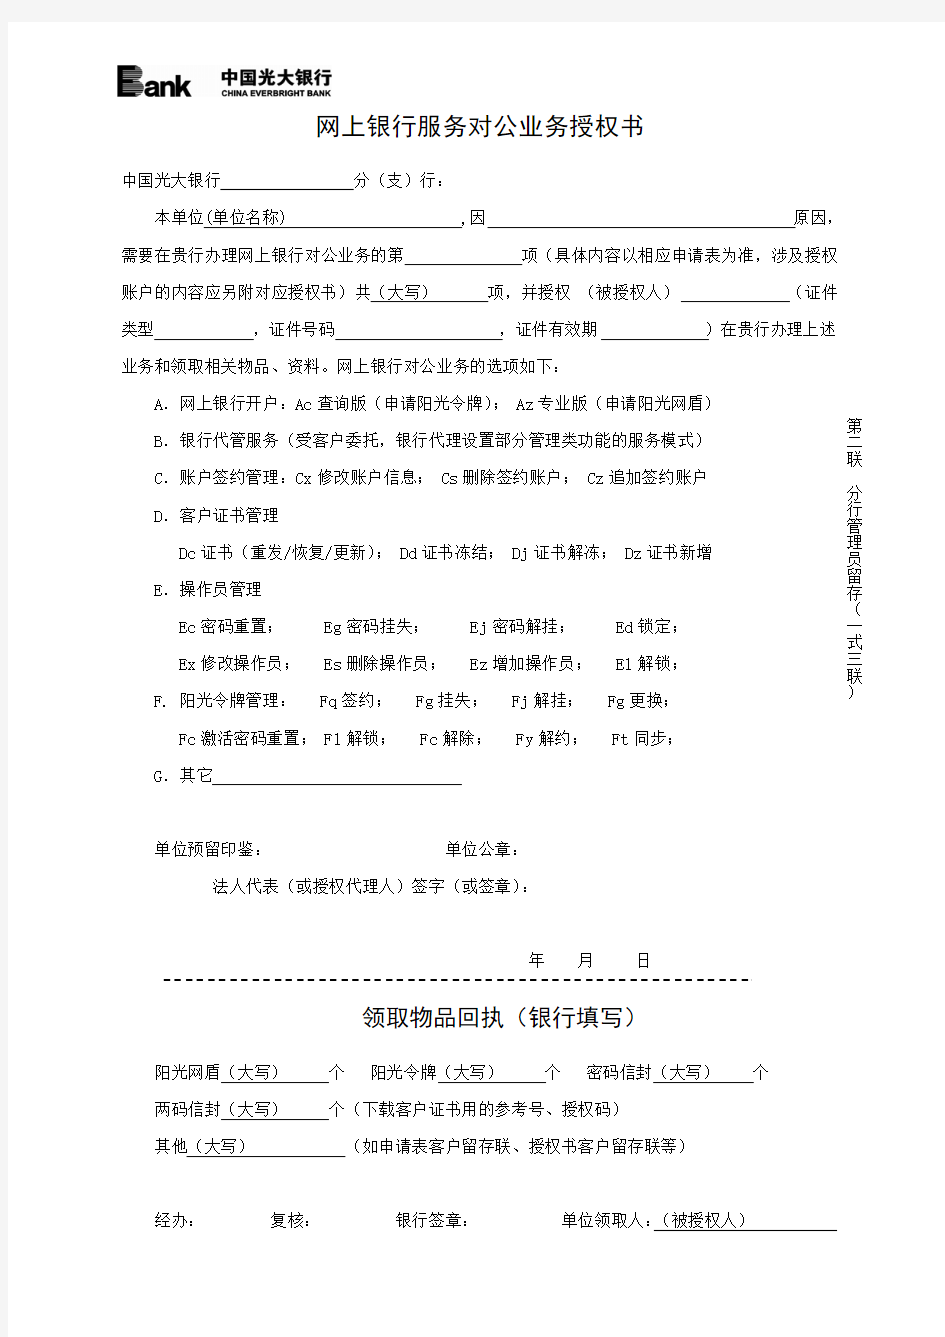 中国光大银行网上银行服务对公业务授权书